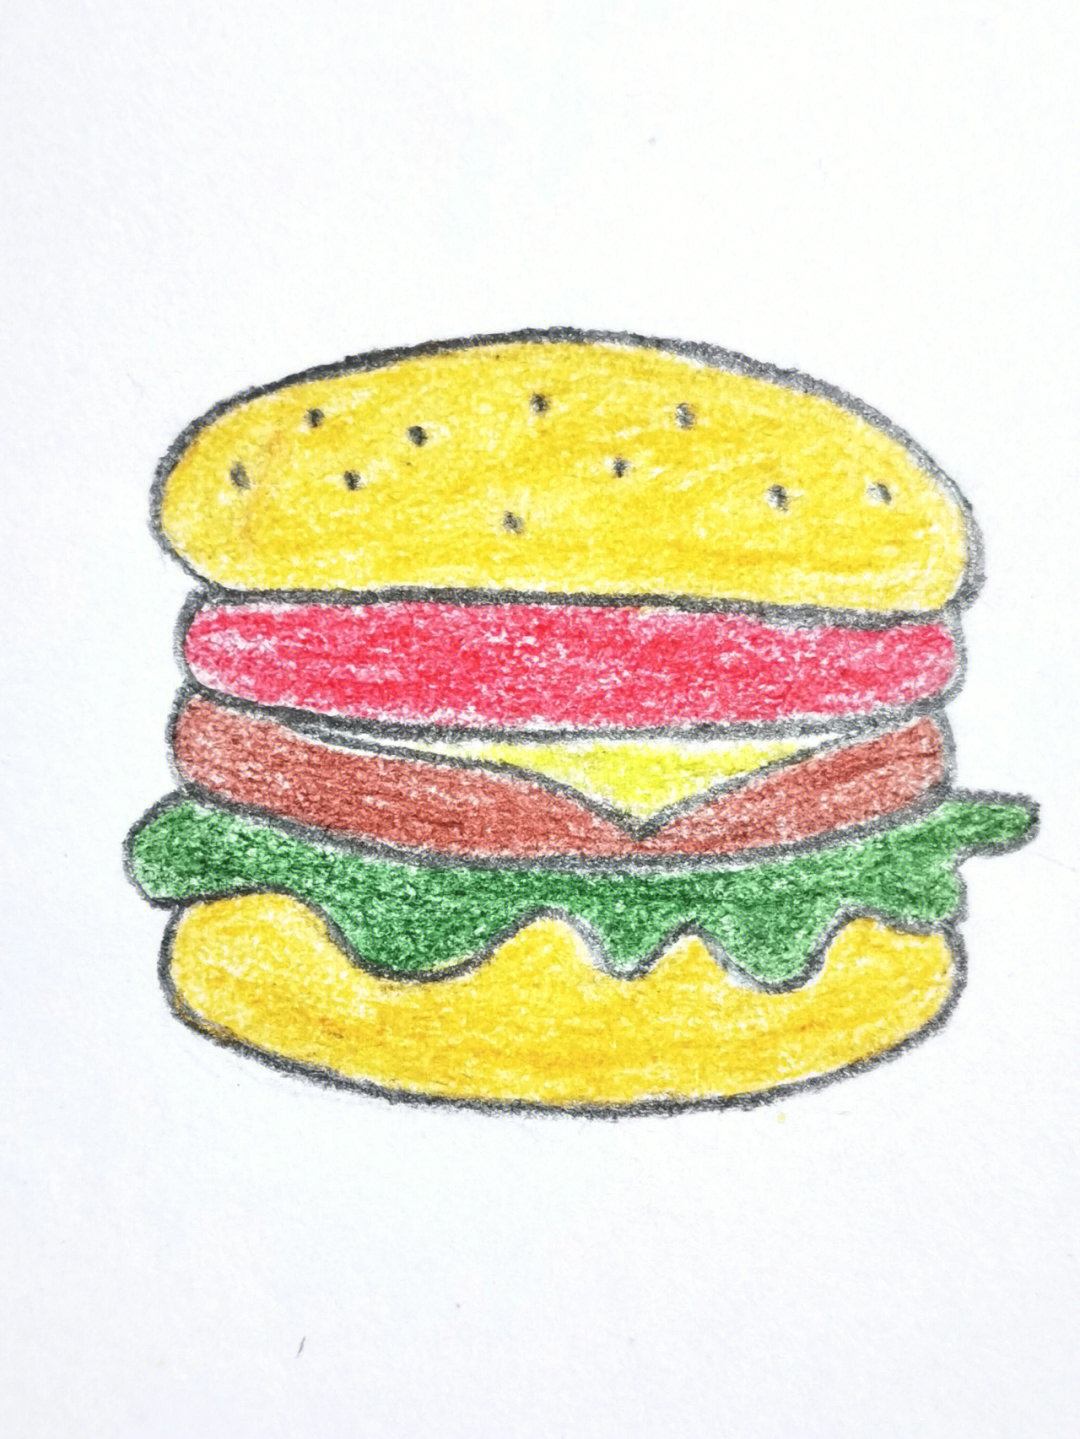 汉堡包简笔画彩色图片